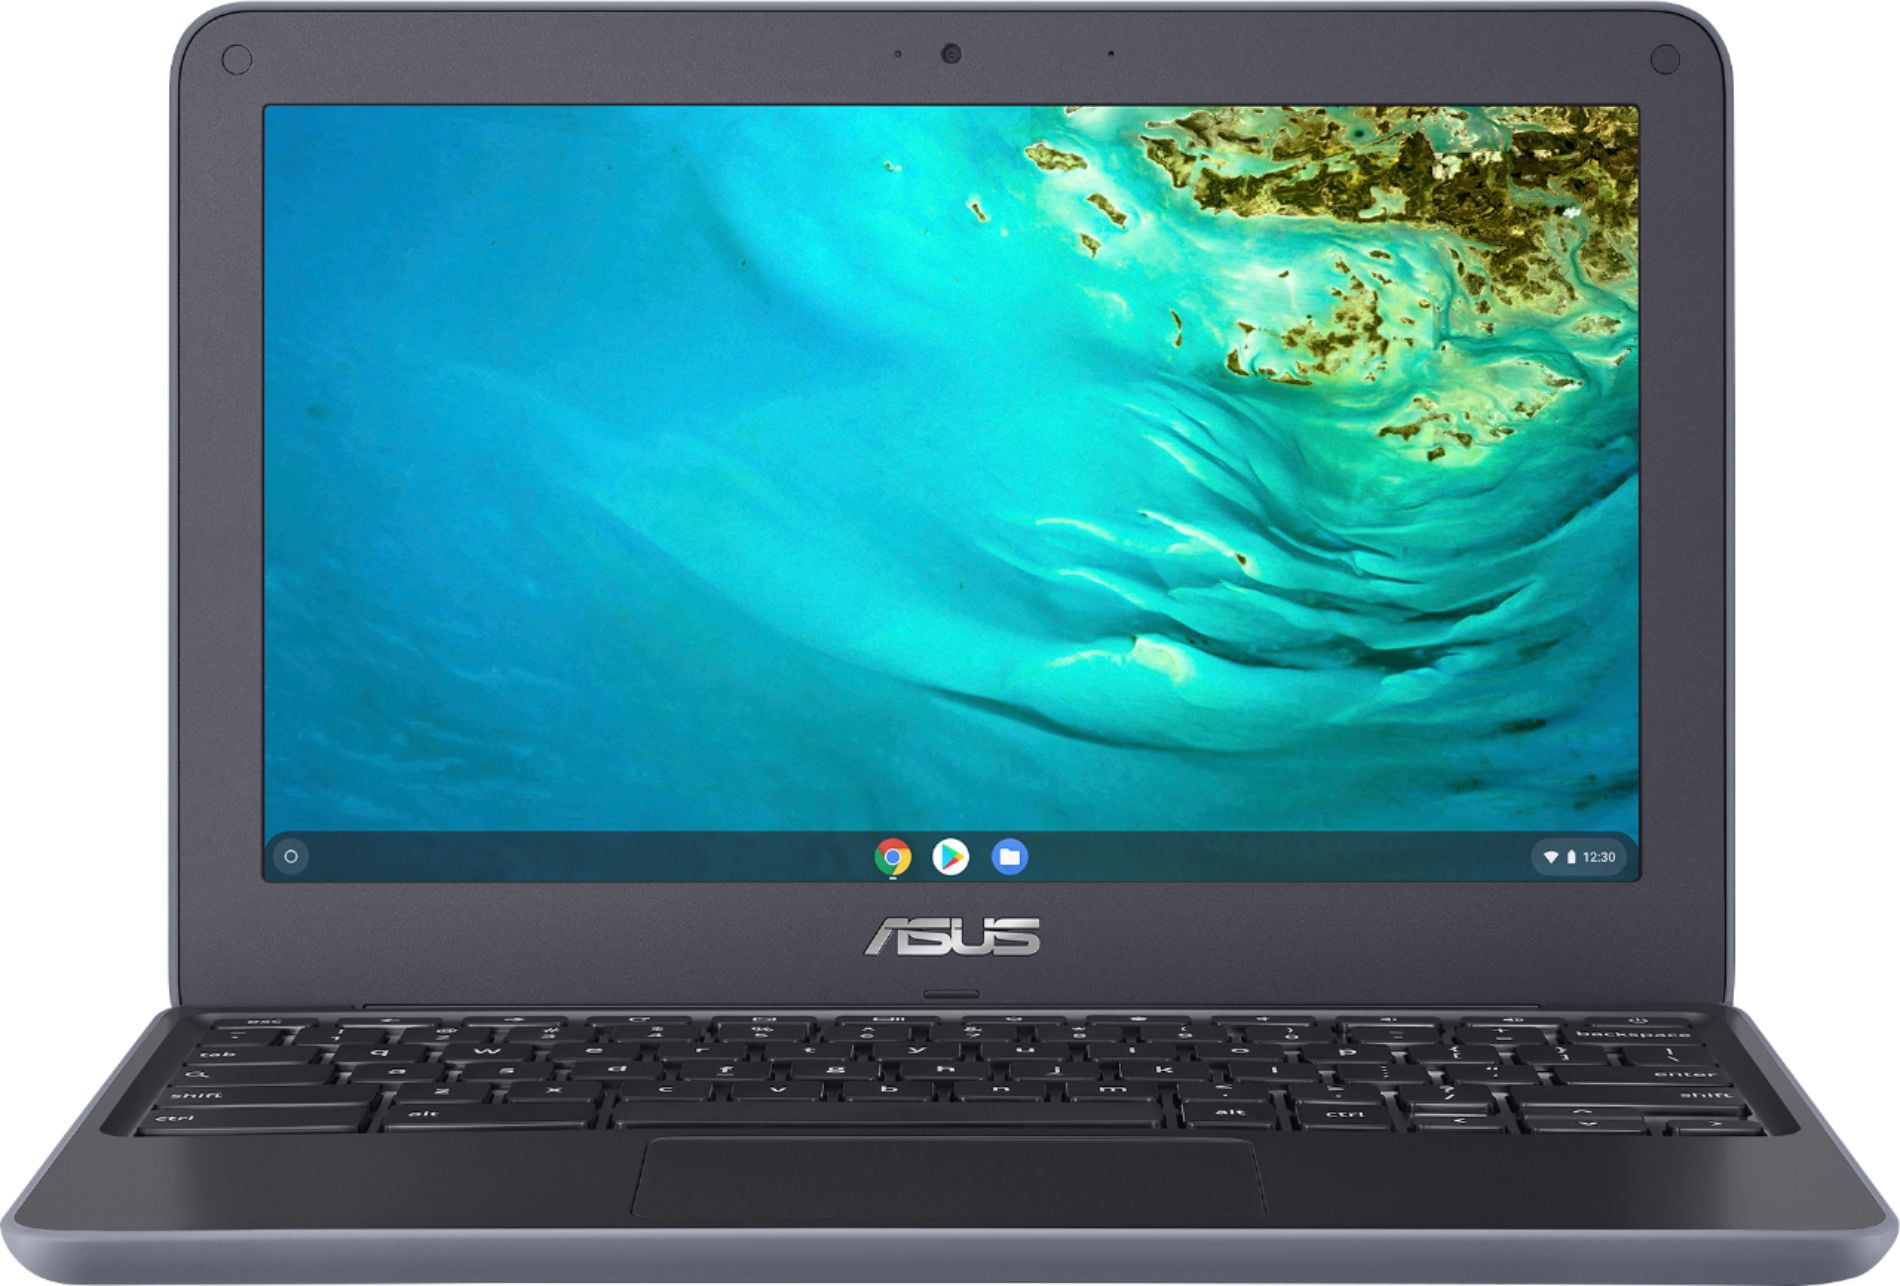 2020 ASUS Chromebook Premium Laptop Computer 11.6" HD Anti-Glare